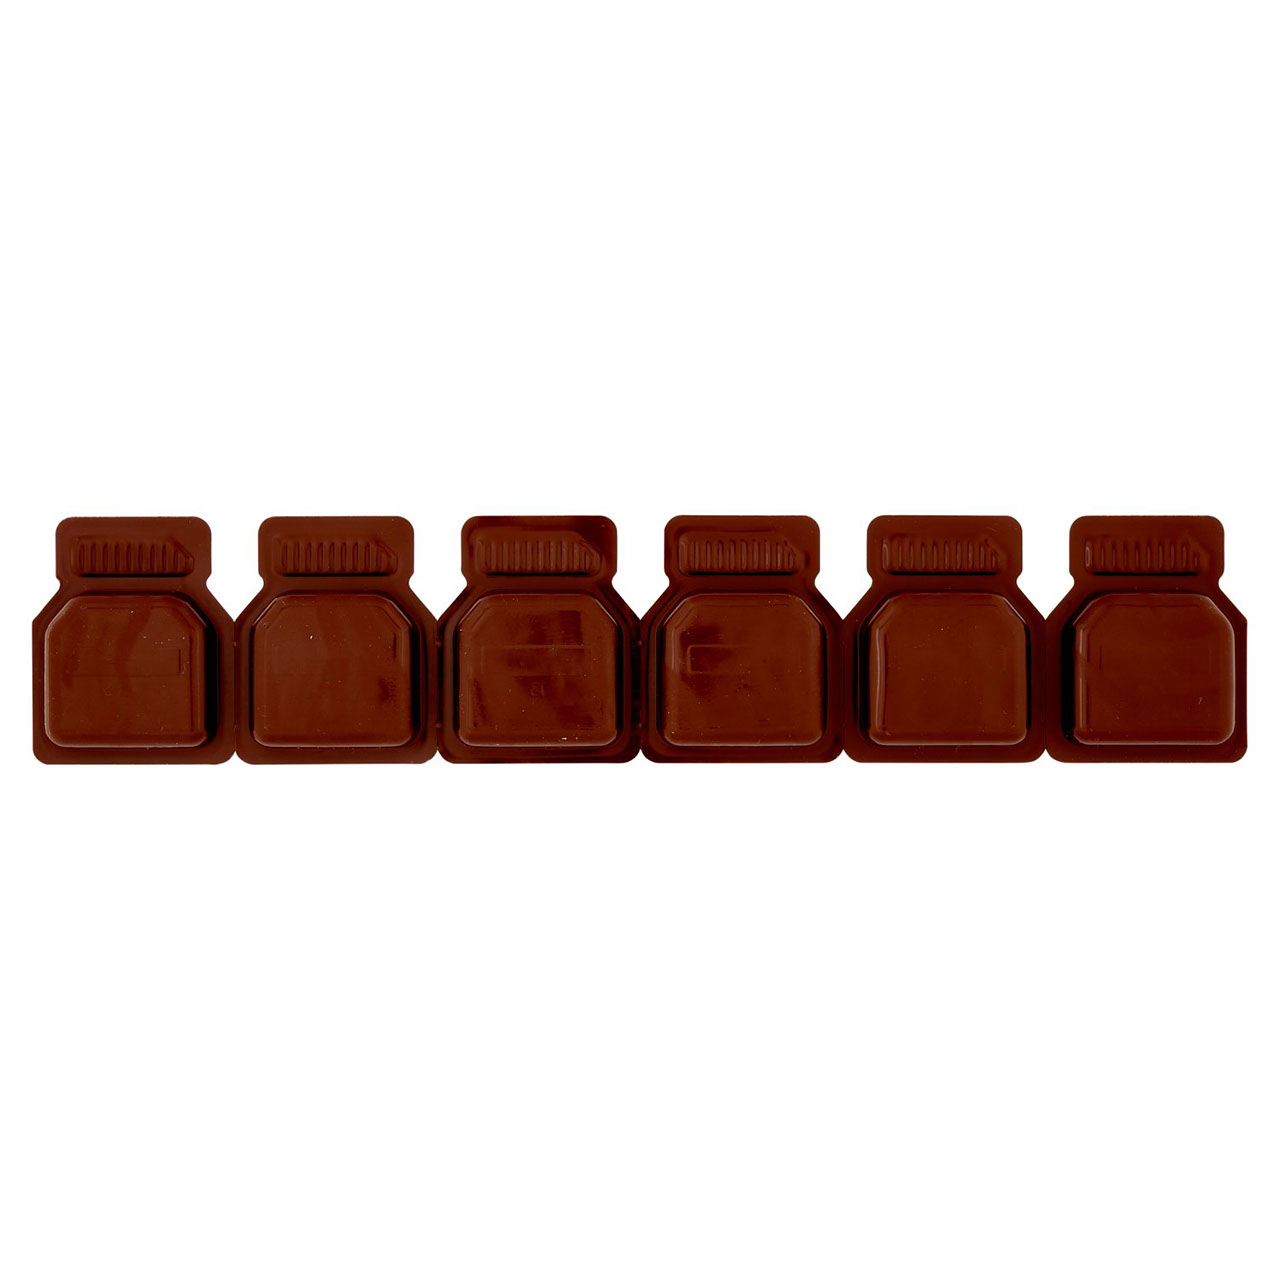 Nutella Confezioni Singole 6x15g vendita online